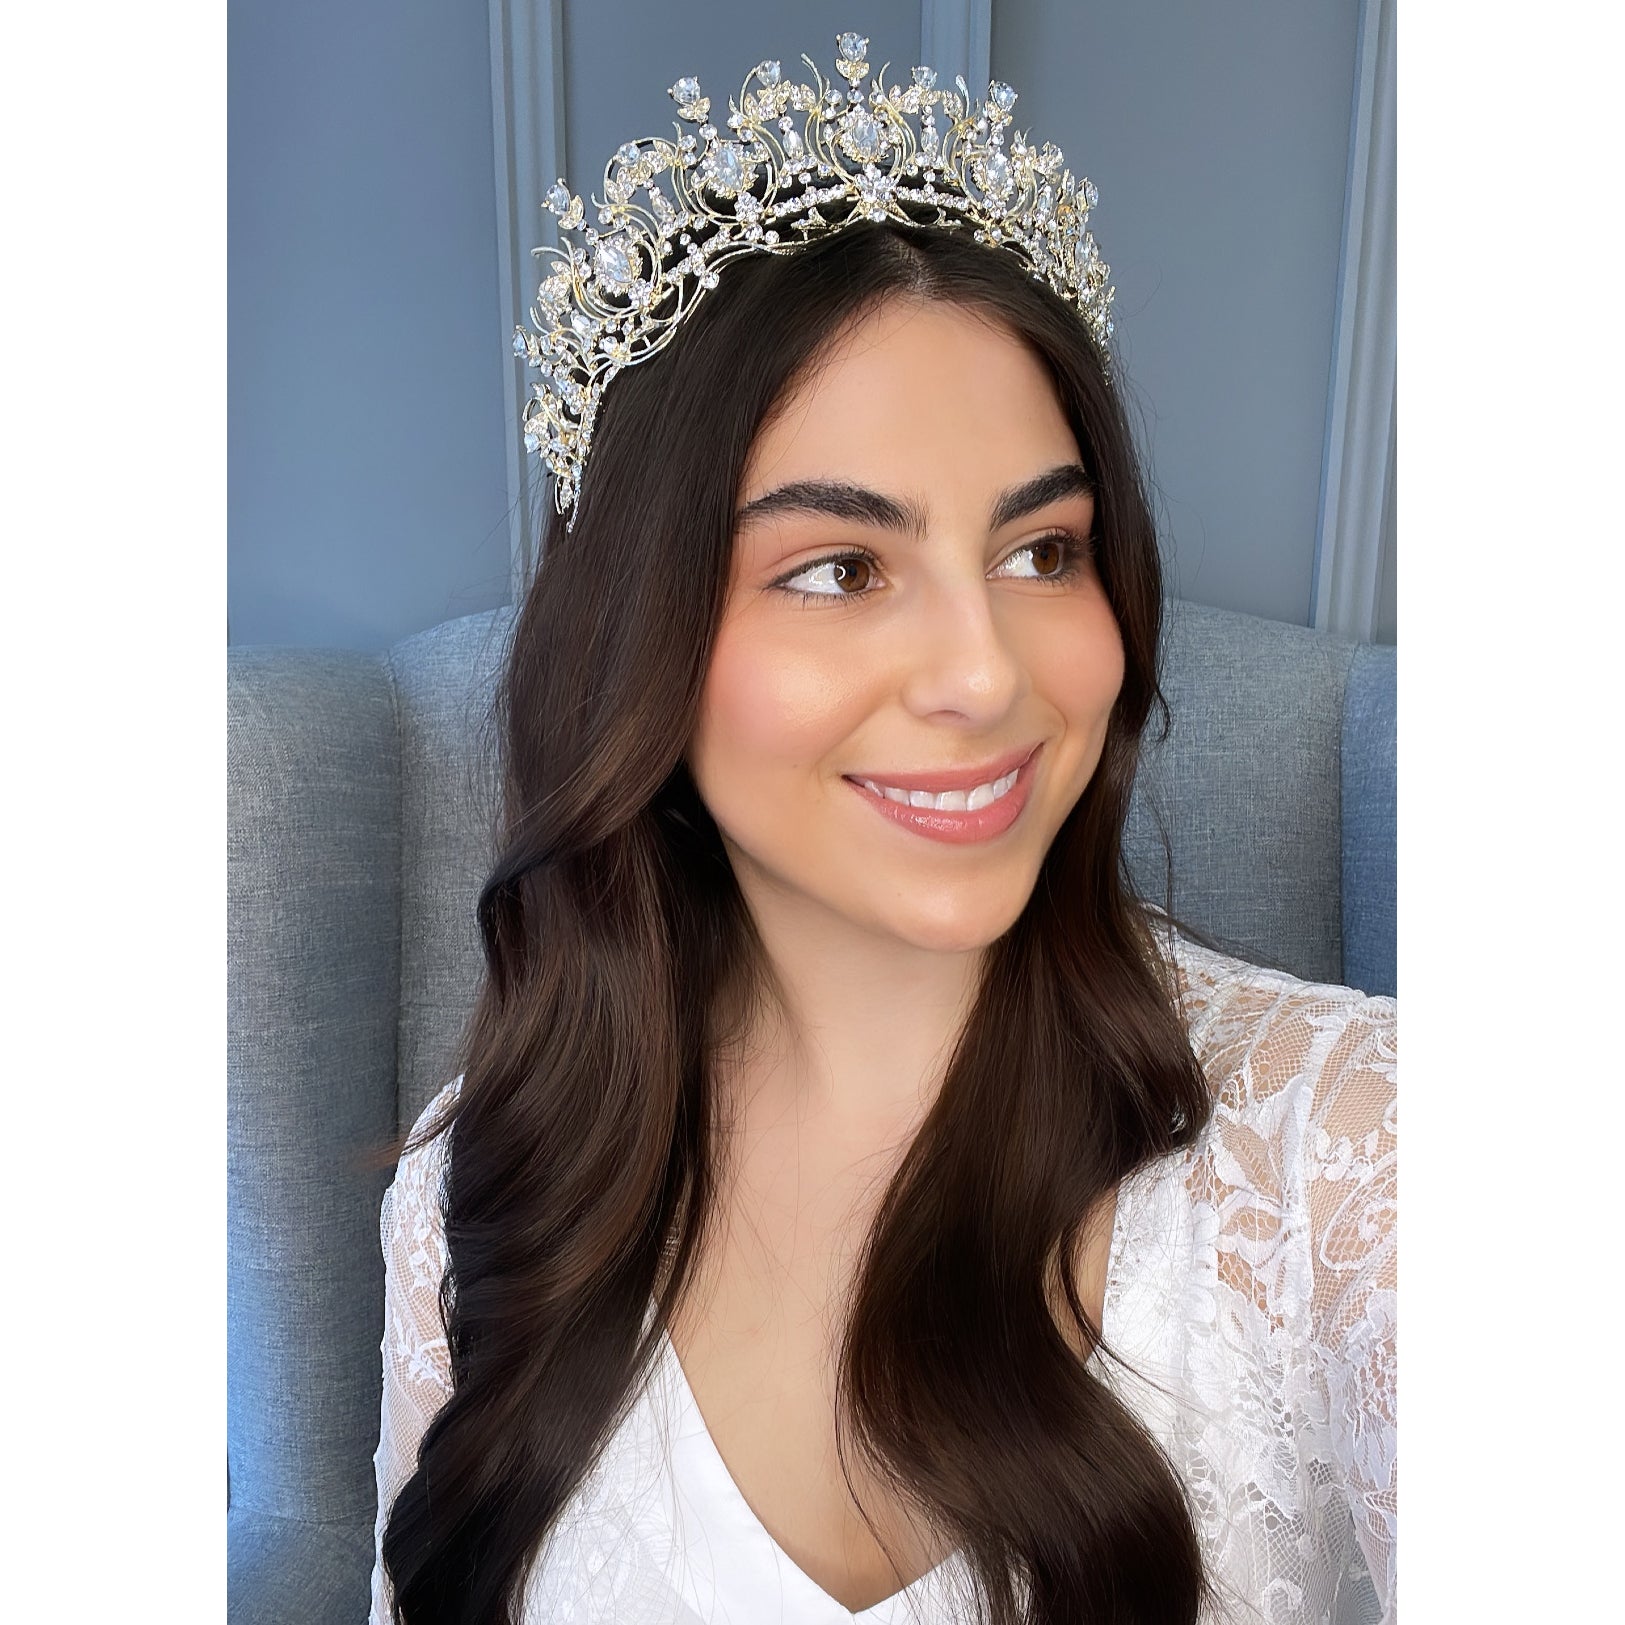 Lila Bridal Crown Hair Accessories - Tiara & Crown    